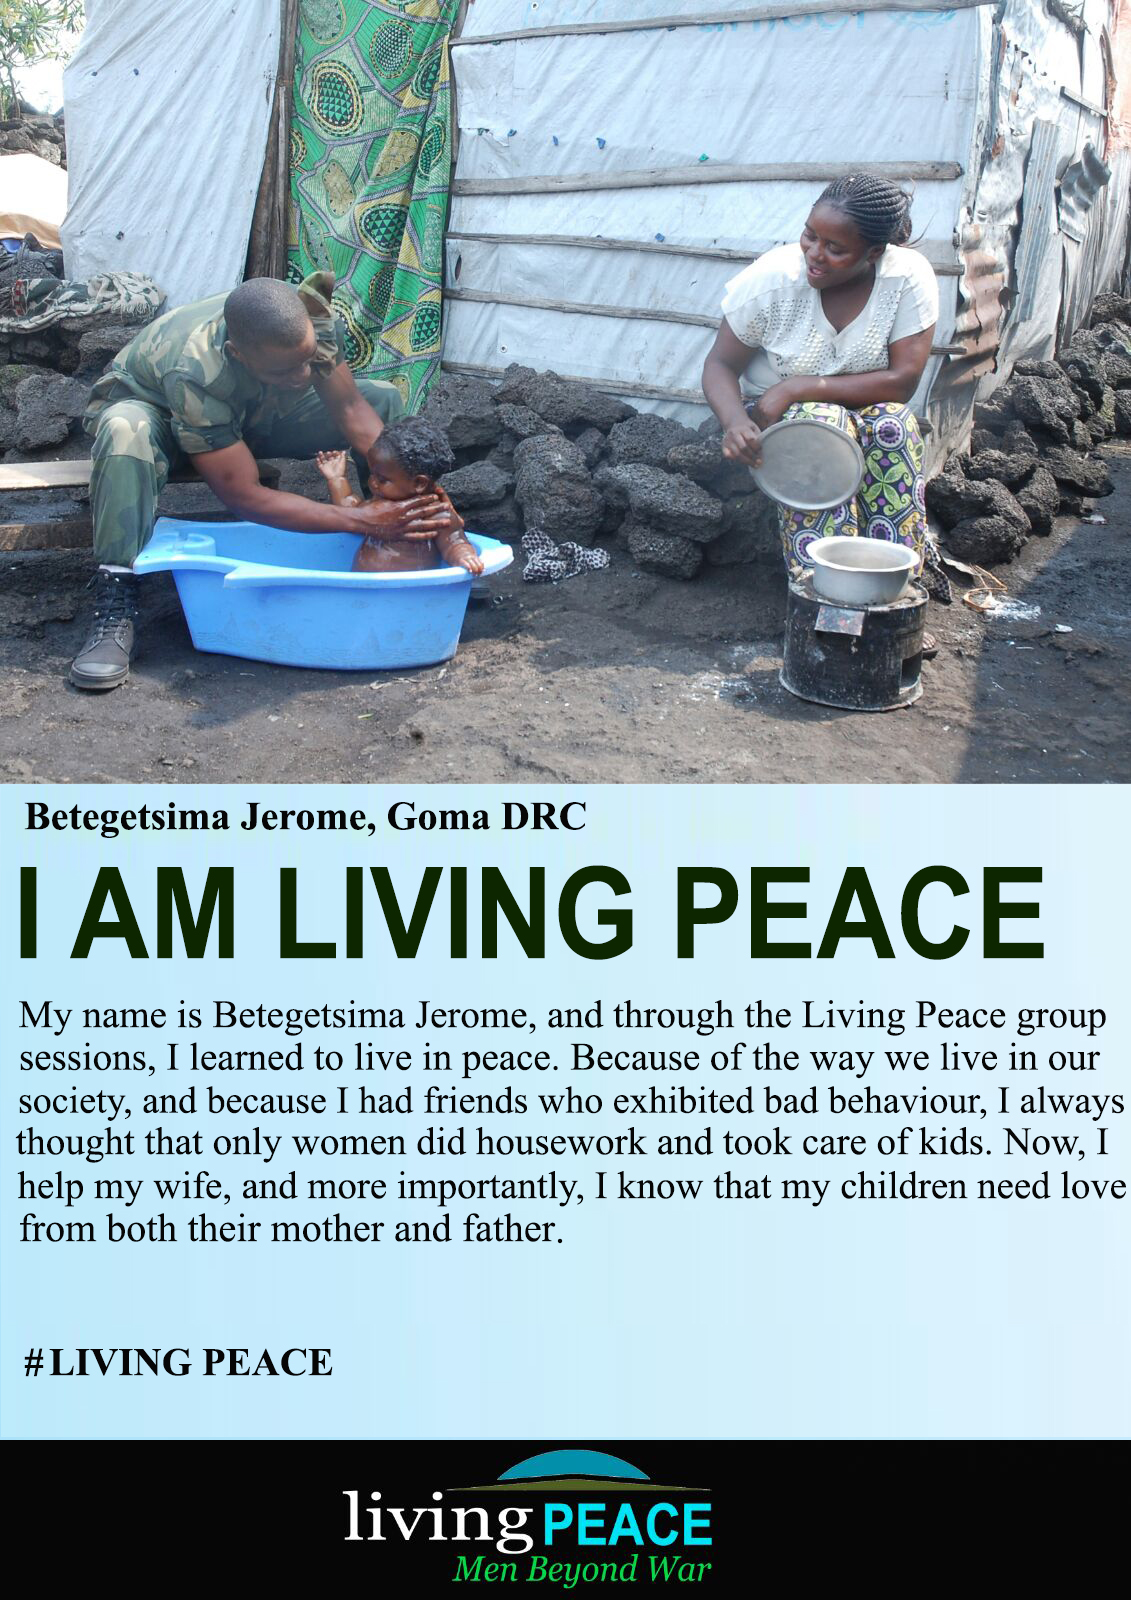 Living Peace Institute DRC - Poster 3 - Equimundo